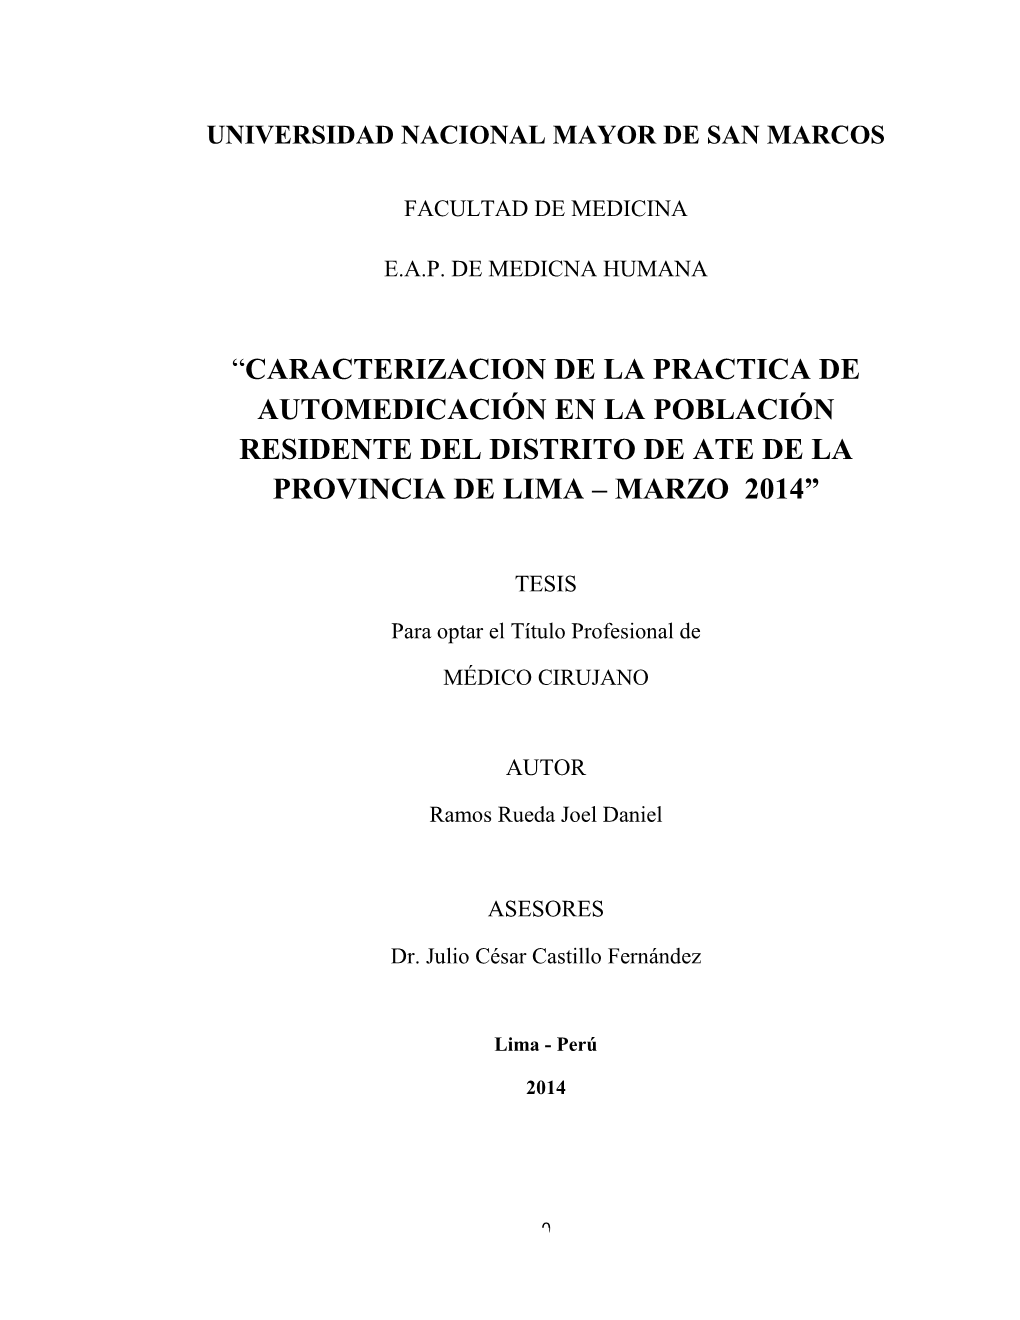 Caracterizacion De La Practica De Automedicación En La Población Residente Del Distrito De Ate De La Provincia De Lima – Marzo 2014”